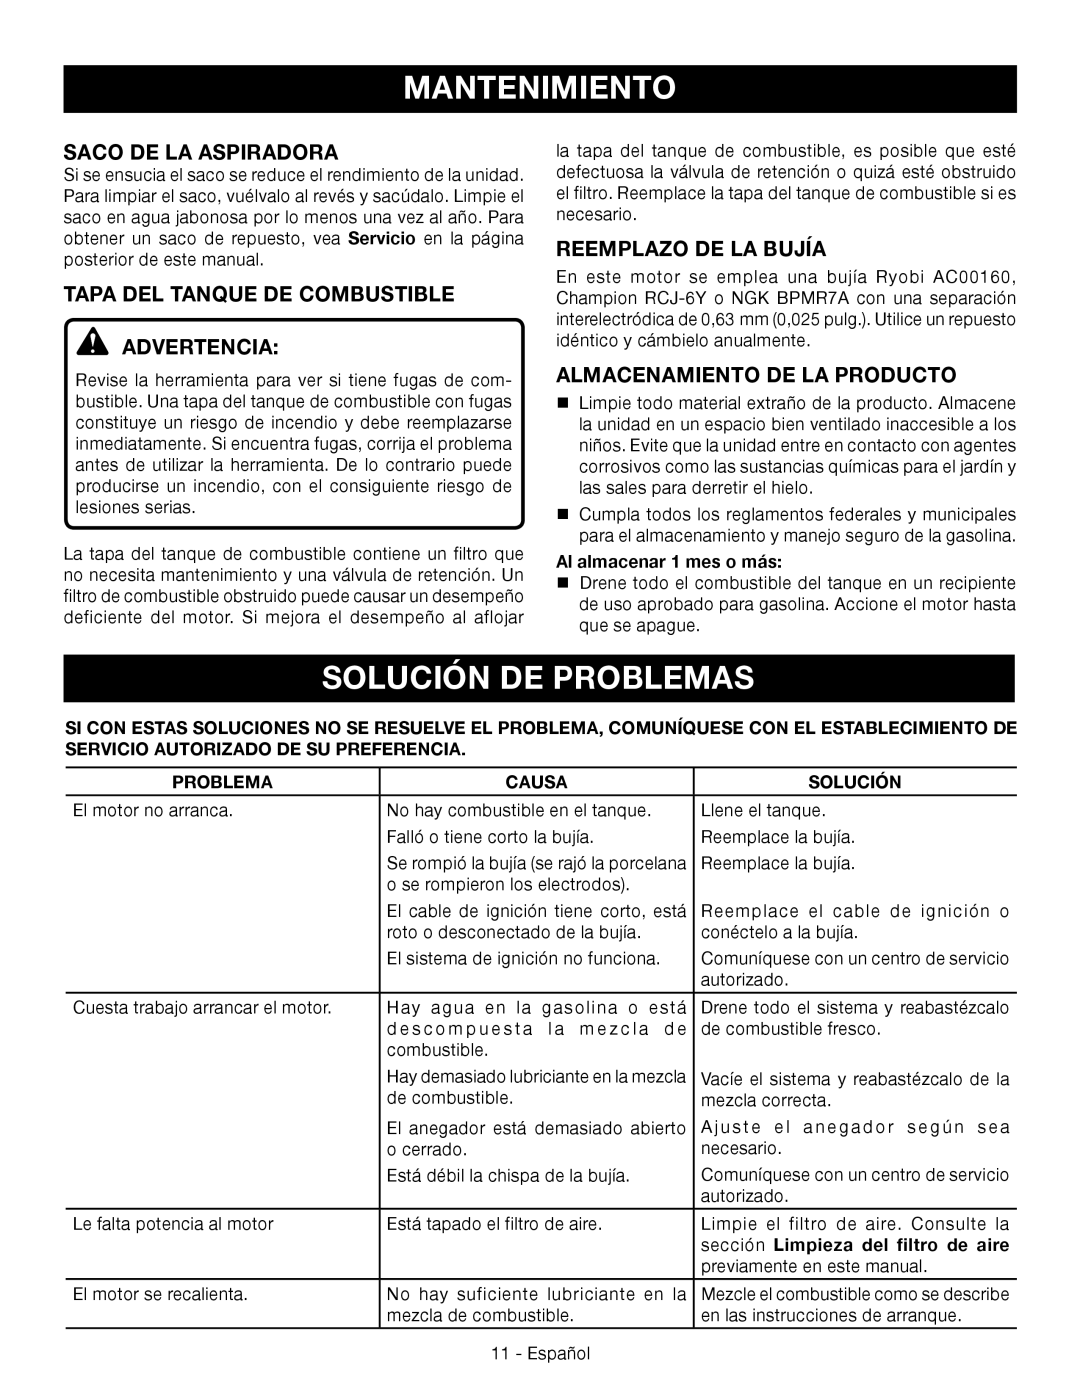 Ryobi RY09051 Solución De Problemas, Tapa Del Tanque De Combustible Advertencia, Reemplazo De La Bujía, Causa 